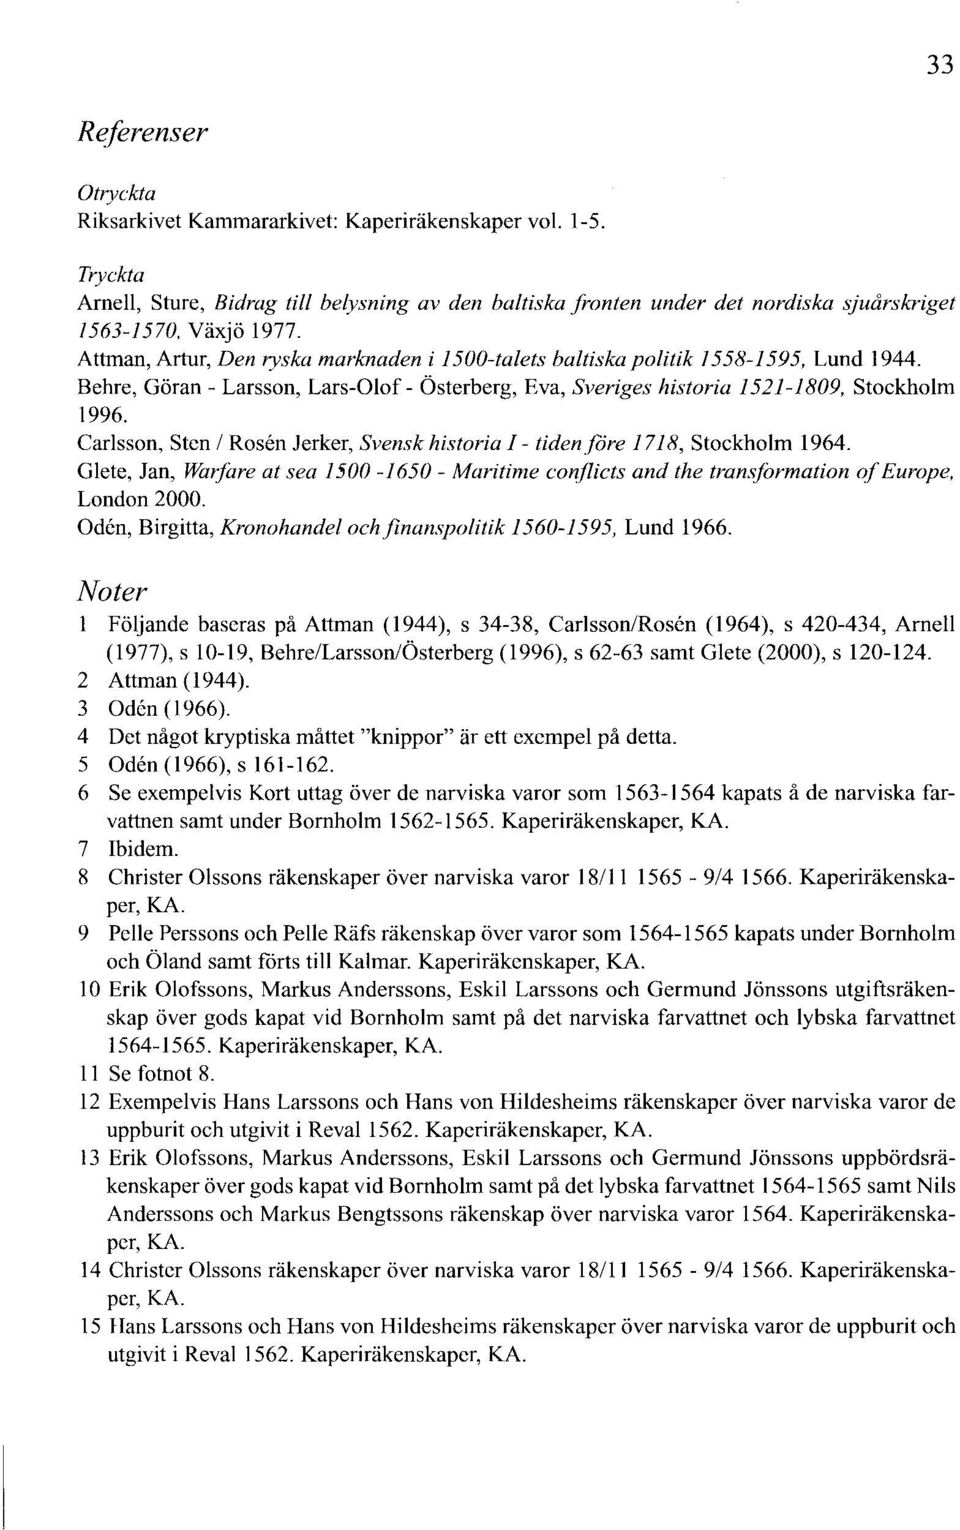 Attman, Artur, Den ryska marknaden i 1500-talets baltiska politik 1558-1595, Lund 1944. Behre, Göran- Larsson, Lars-Olof- Österberg, Eva, Sveriges historia 1521-1809, Stockholm 1996.